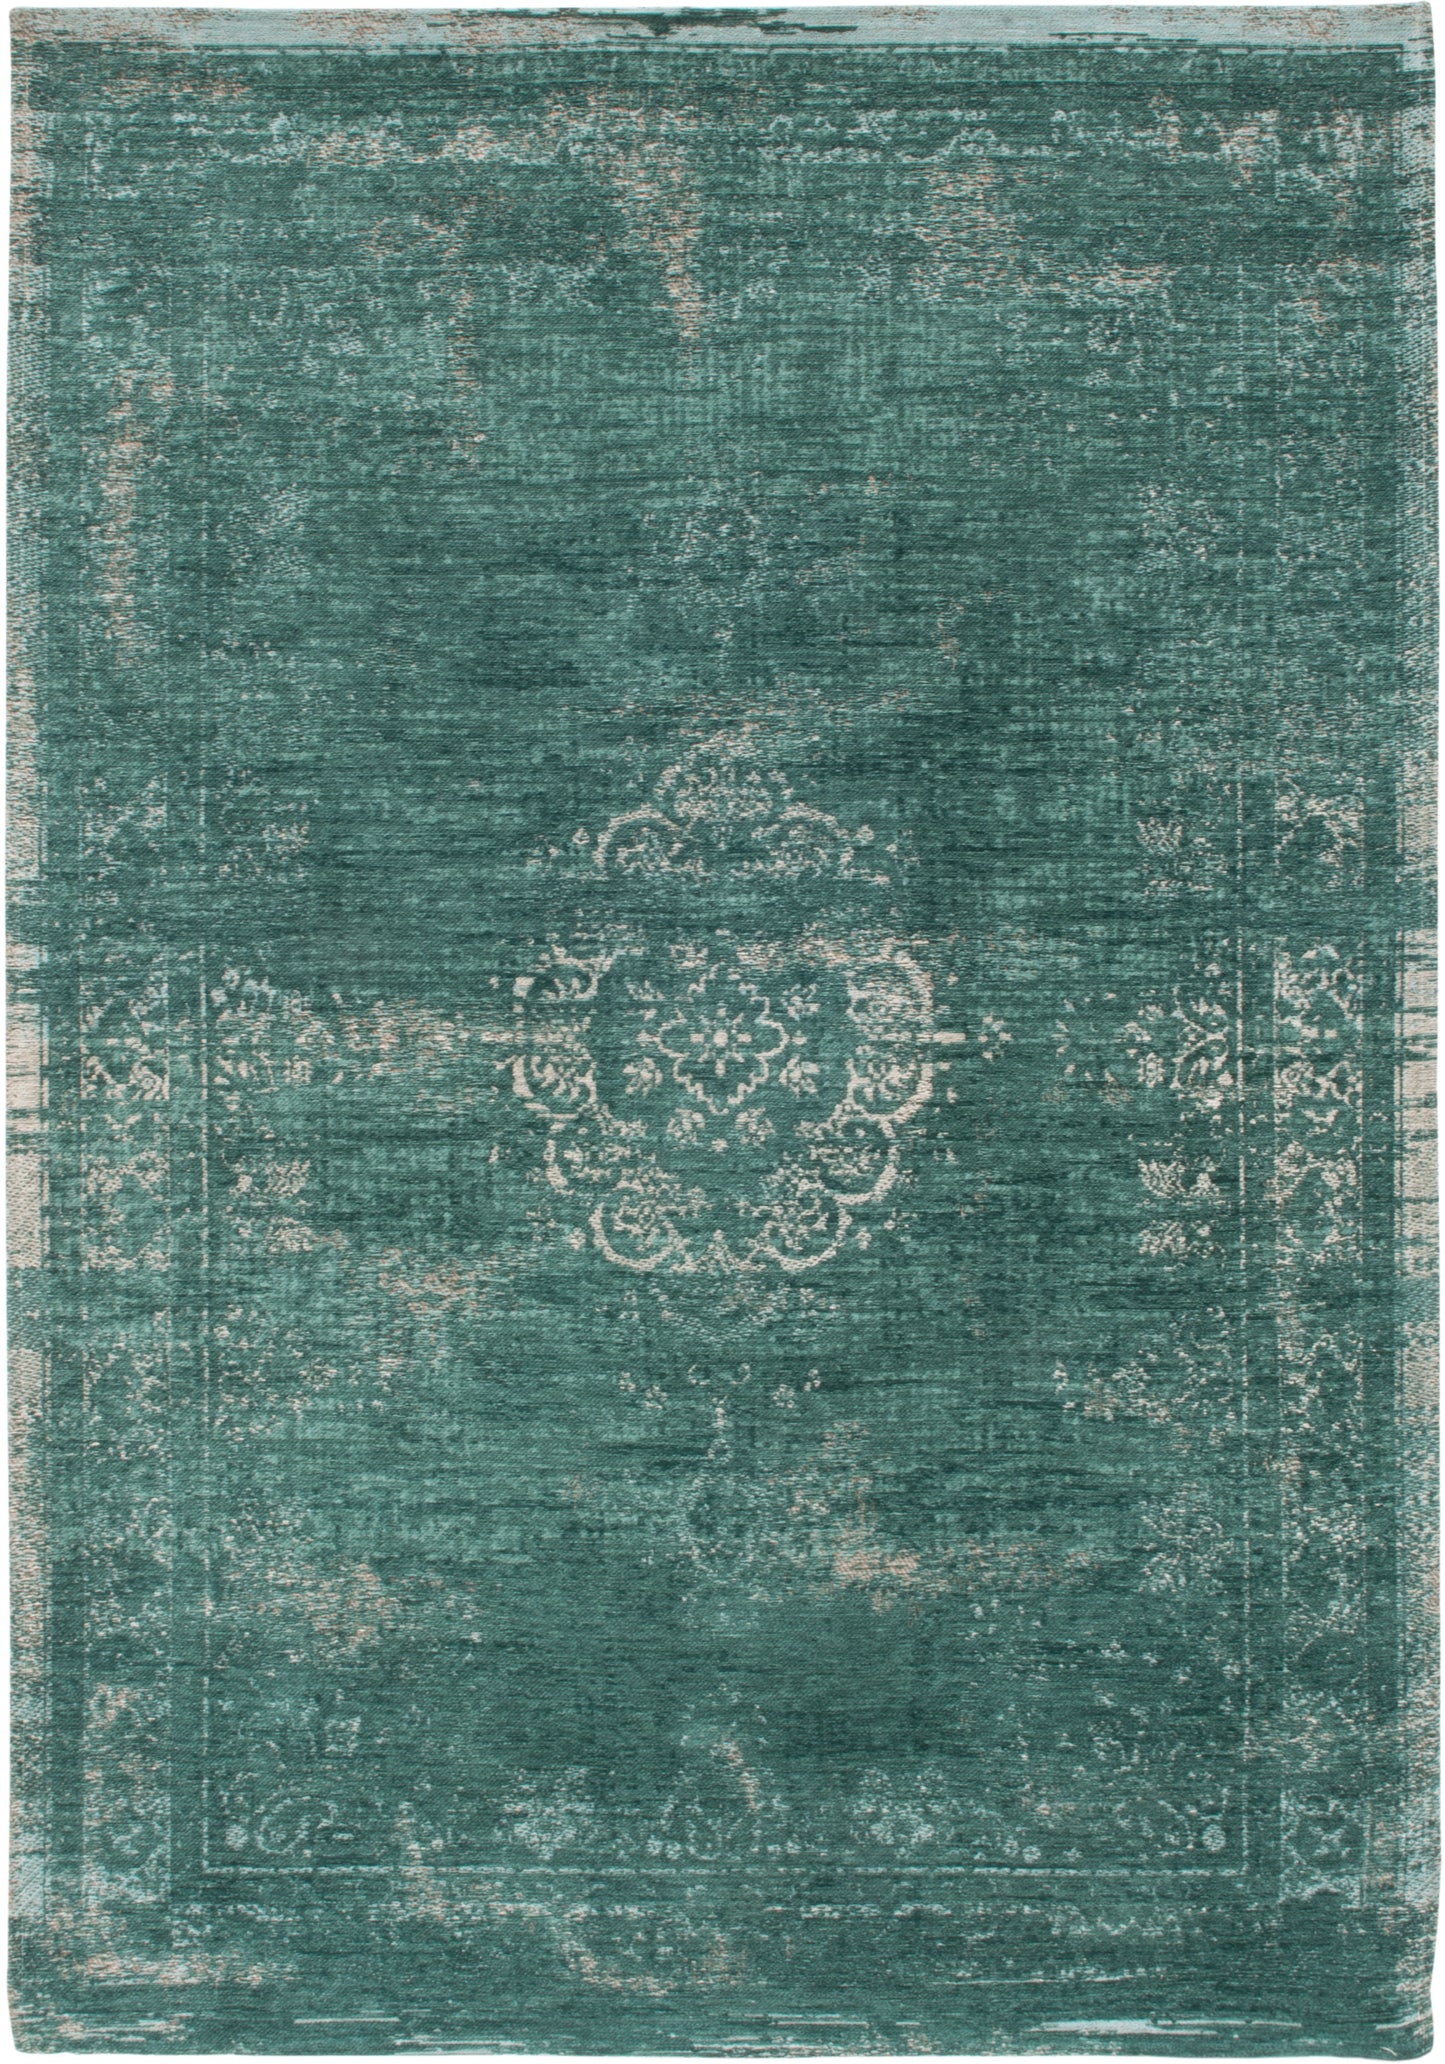 ME-401: Jacquard carpet